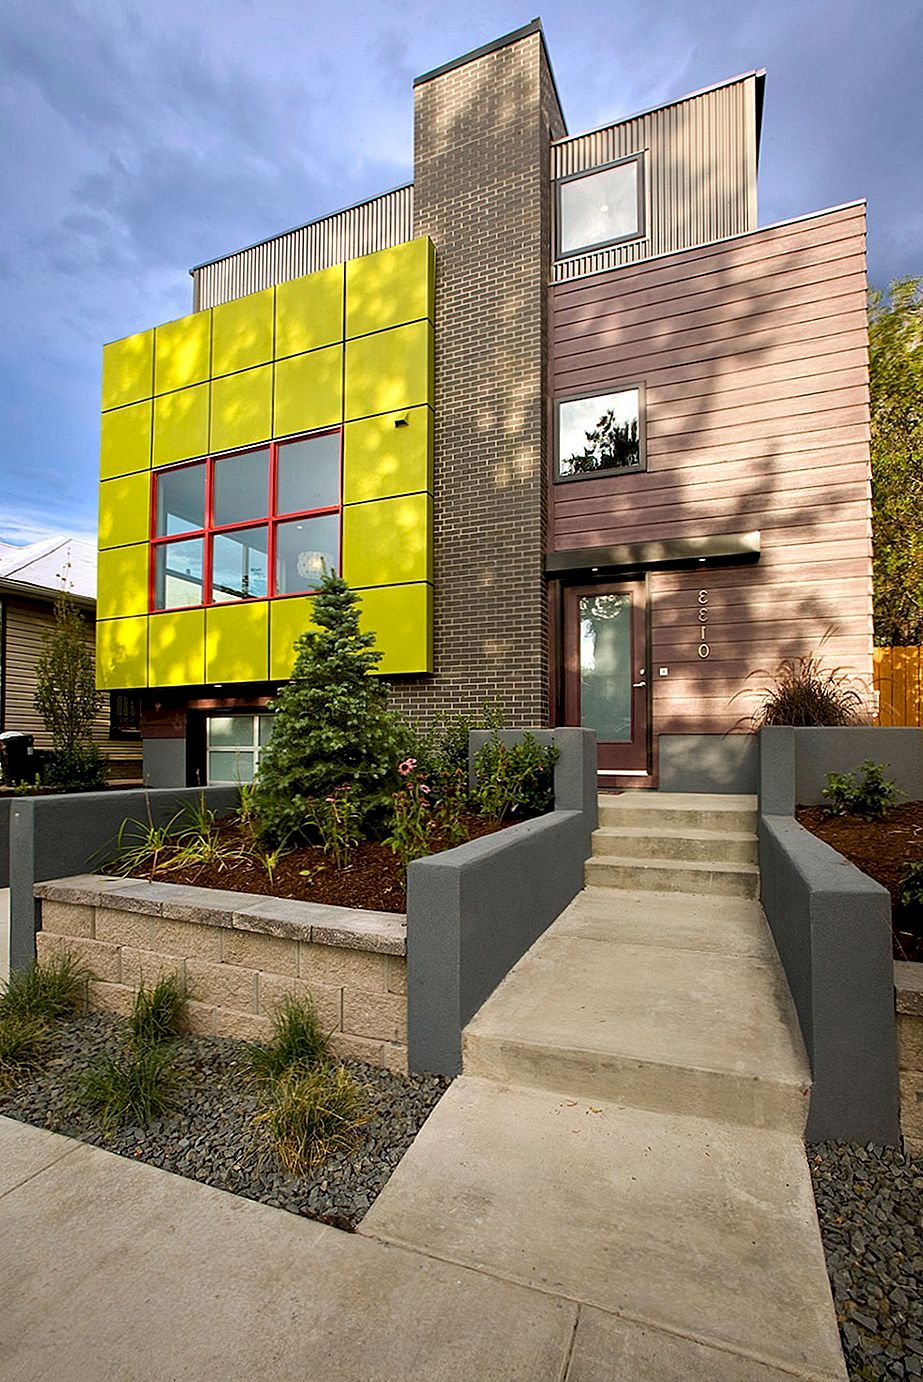 Impresivna ekološka kuća u Denveru, Colorado s jakim arhitektonskim oblicima